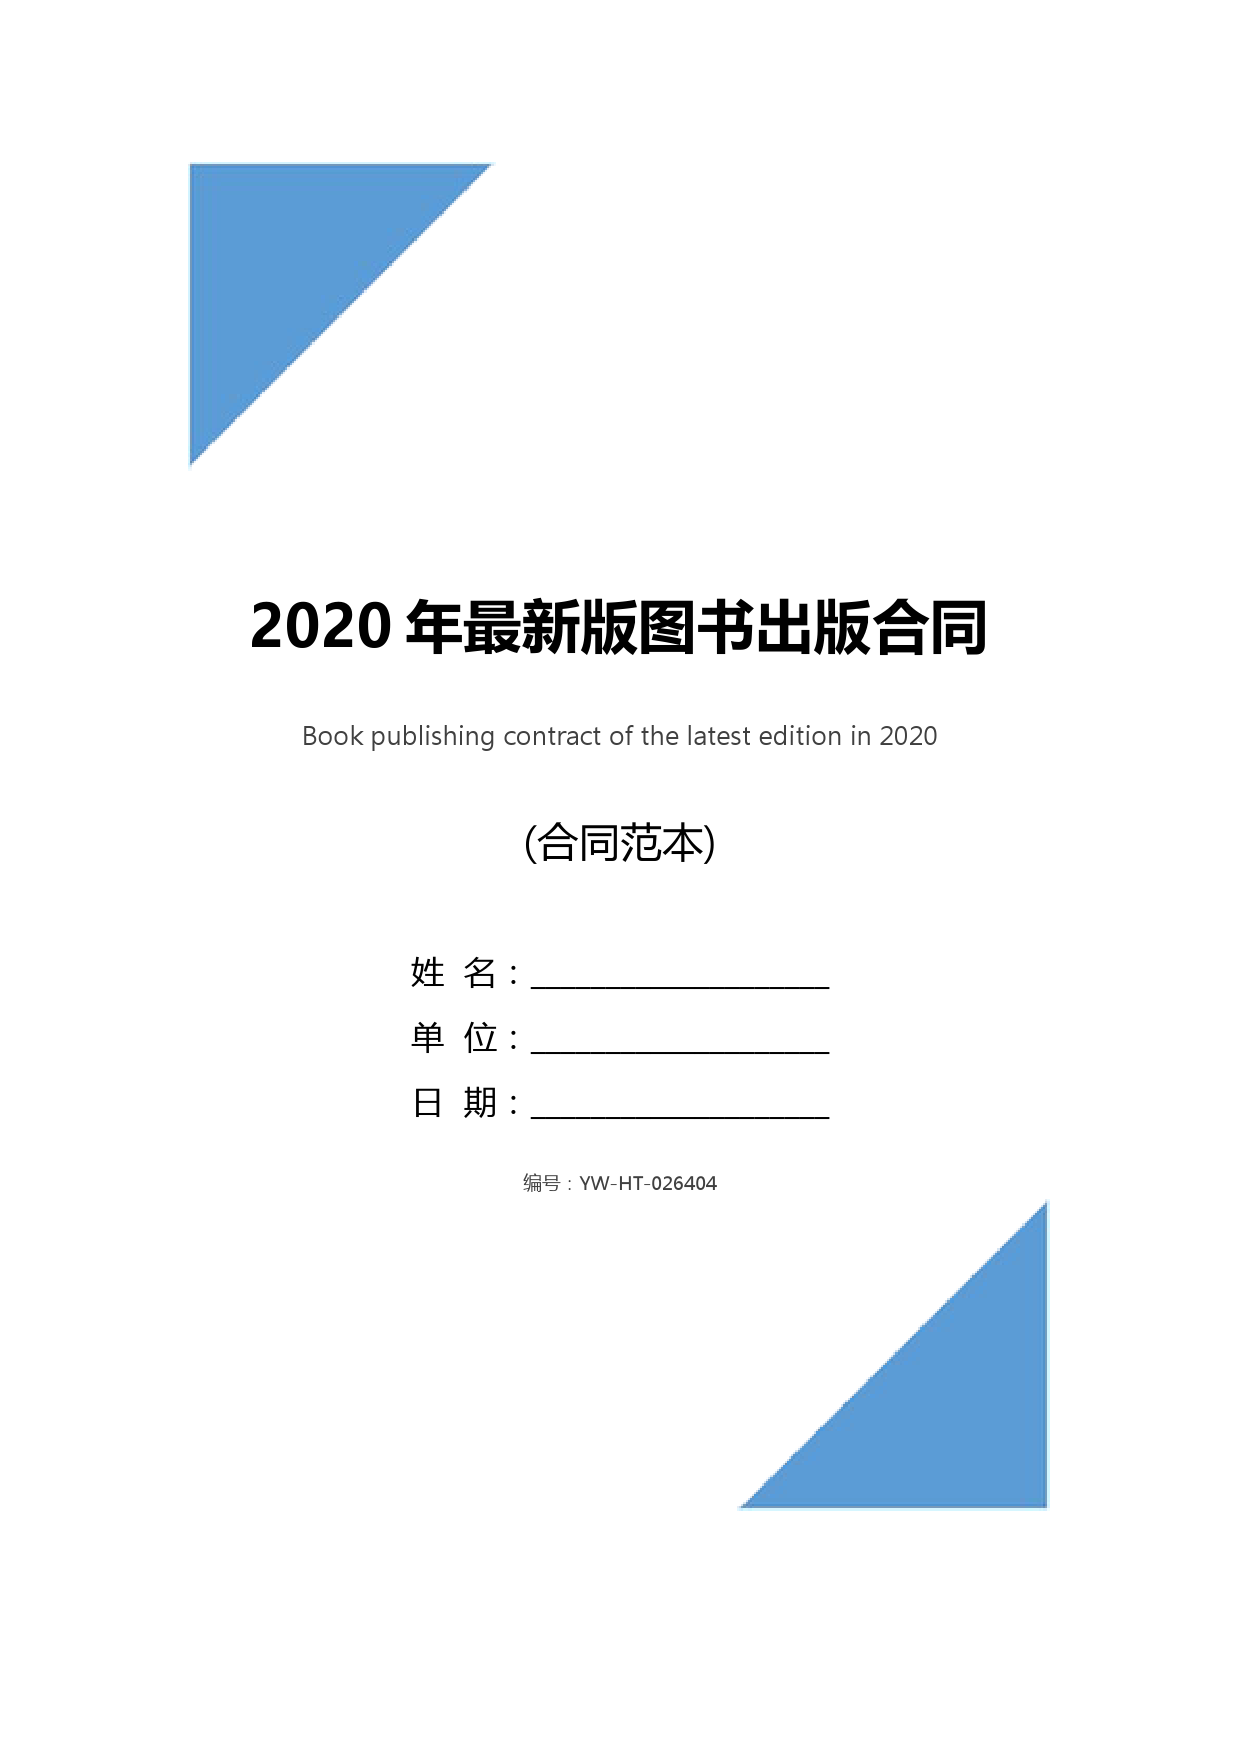 2020年最新版图书出版合同